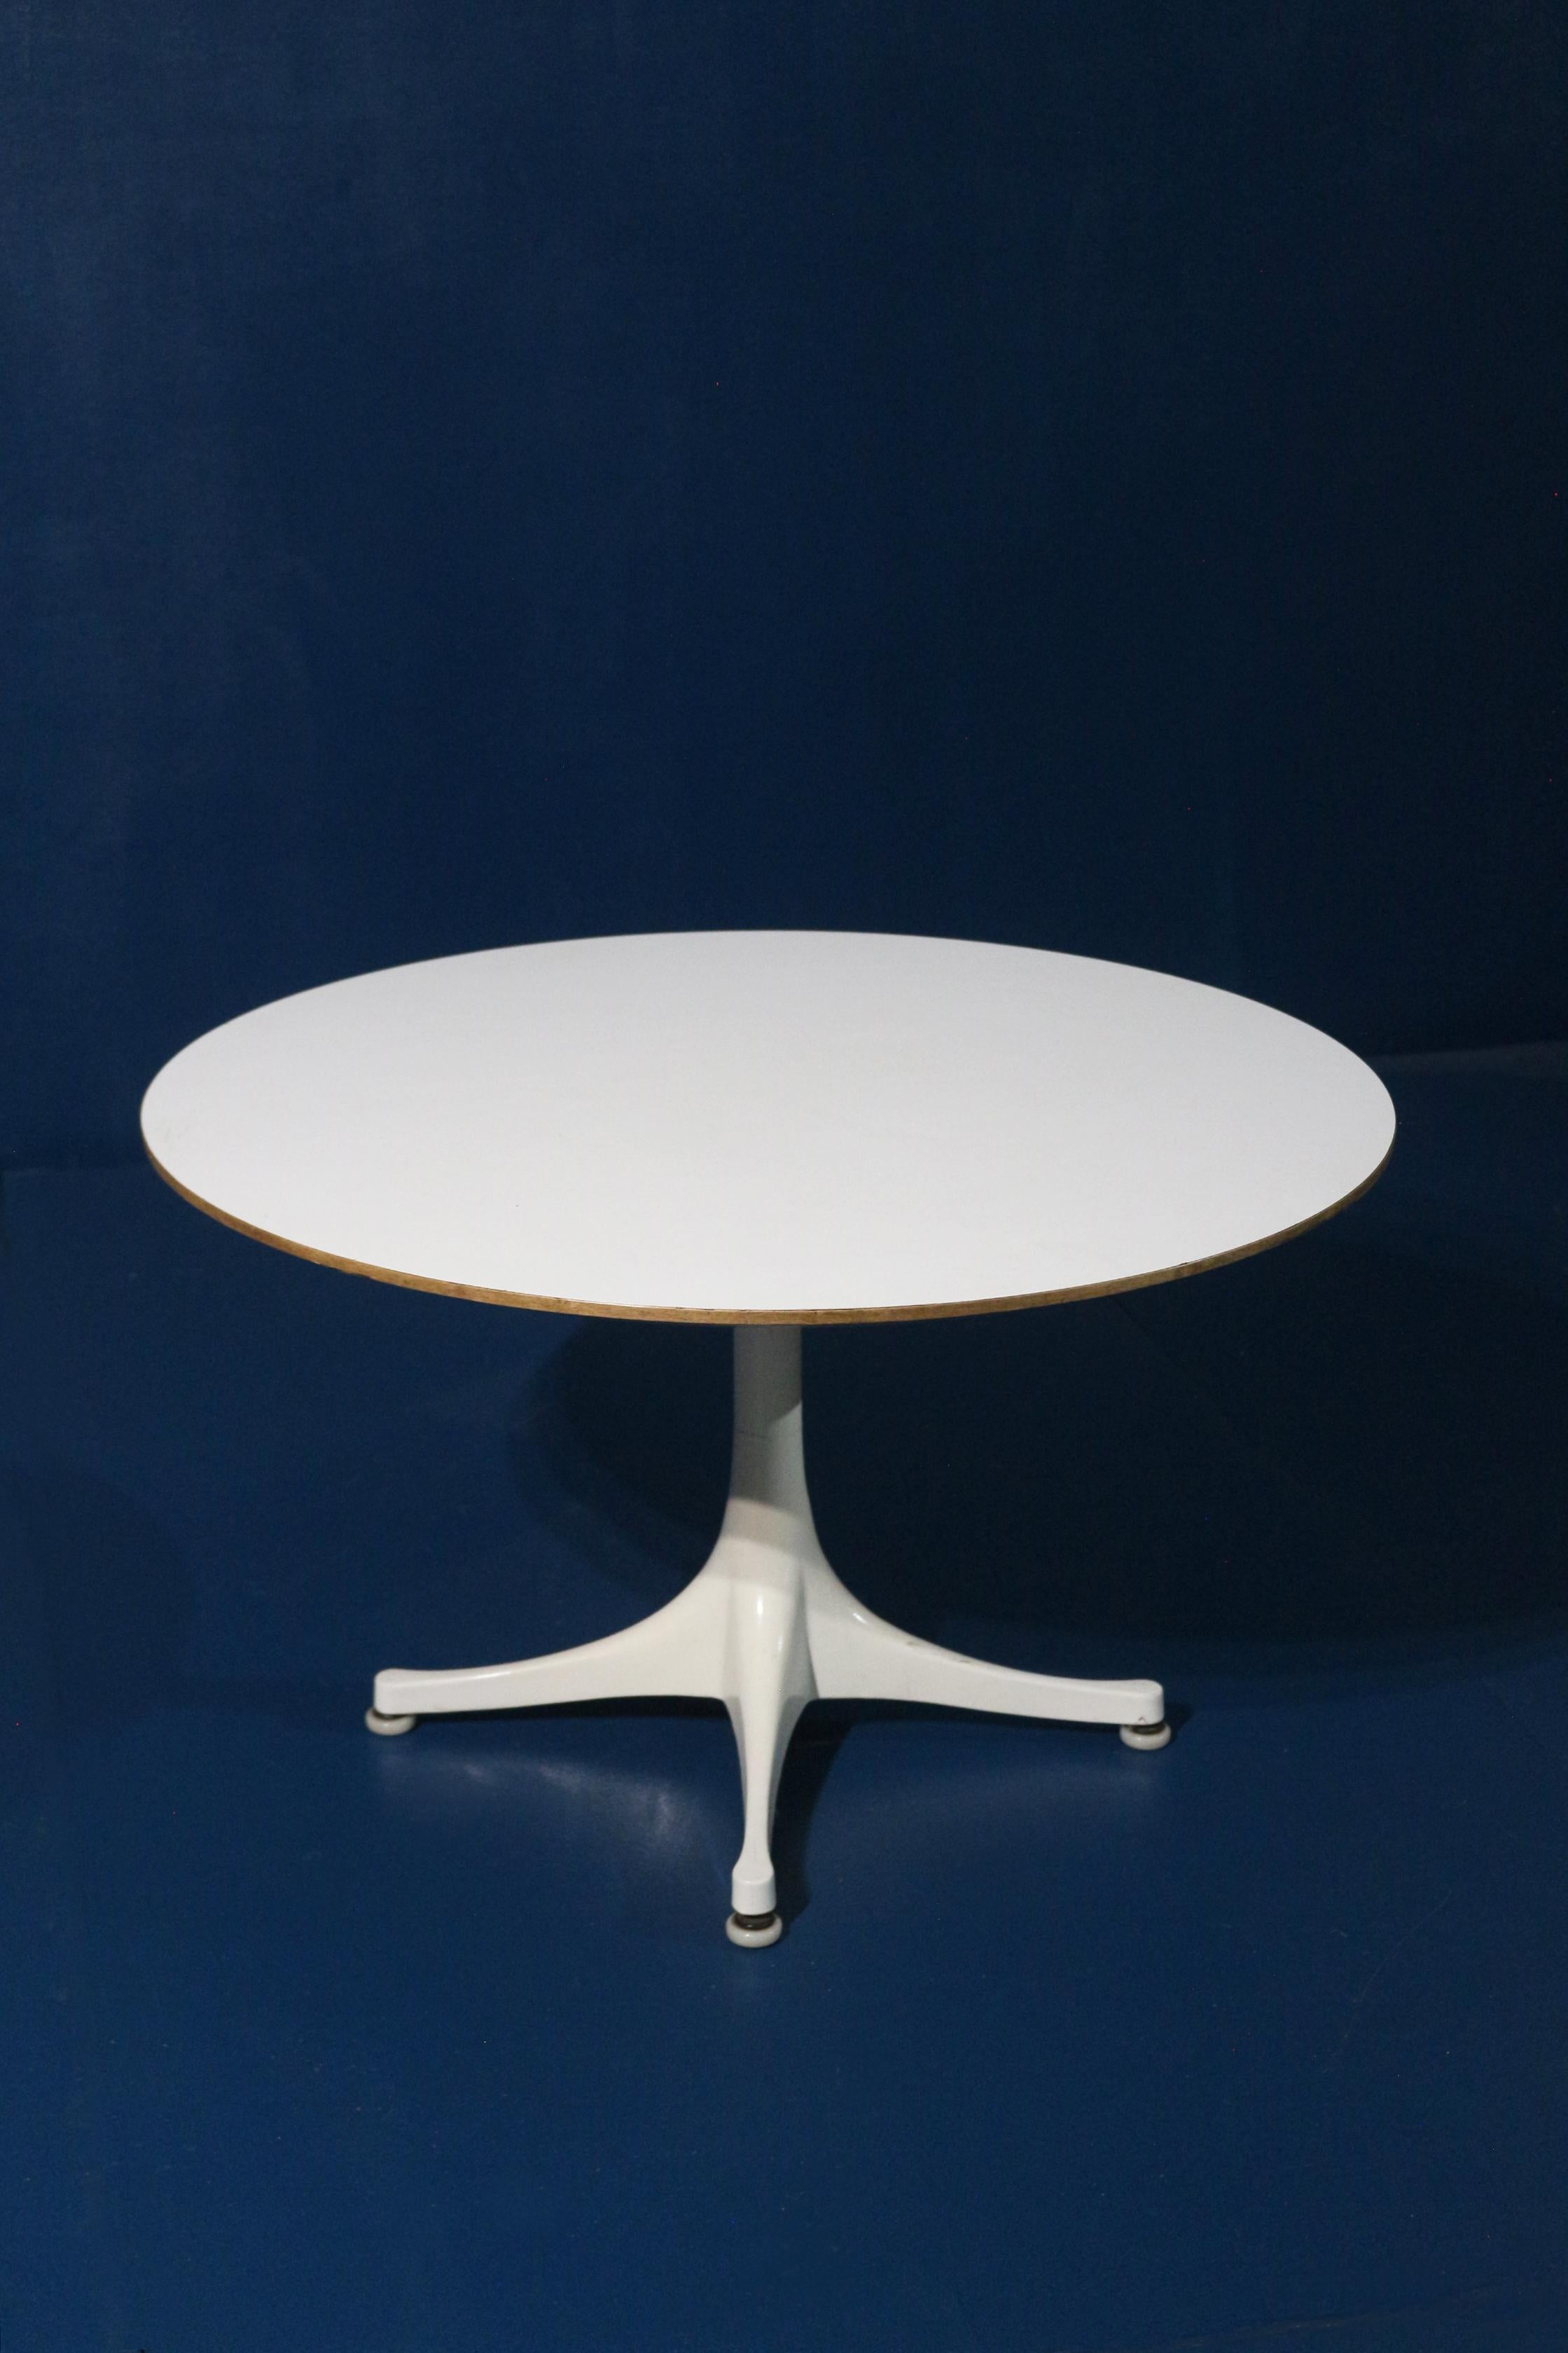 Rare table datant des années 60 réalisée par le designer George Nelson
Très bon état general . Entièrement d'origine . 
Fabricant Herman Miller . Etiquette présente sous le plateau de la table. 